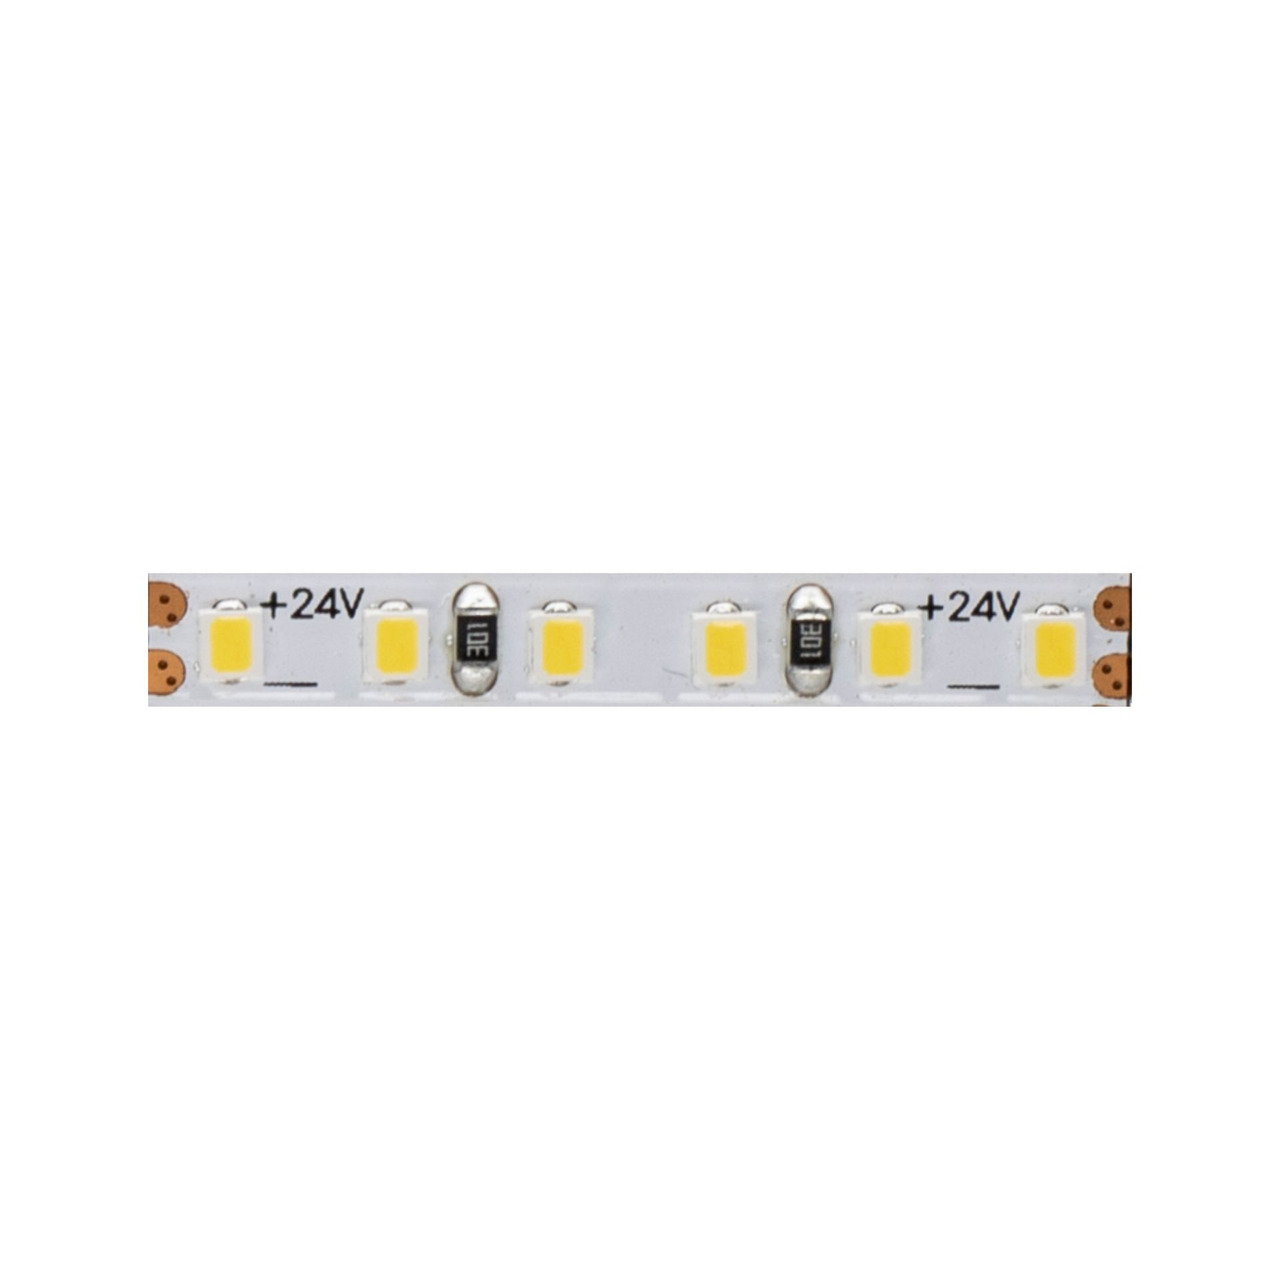 Beneito 5-m-LED-Streifen FINE-49- 50 W- 24 V DC- 3000 K- 90 Ra- 10 W-m- 740 lm-m- 204 LEDs-m- IP20